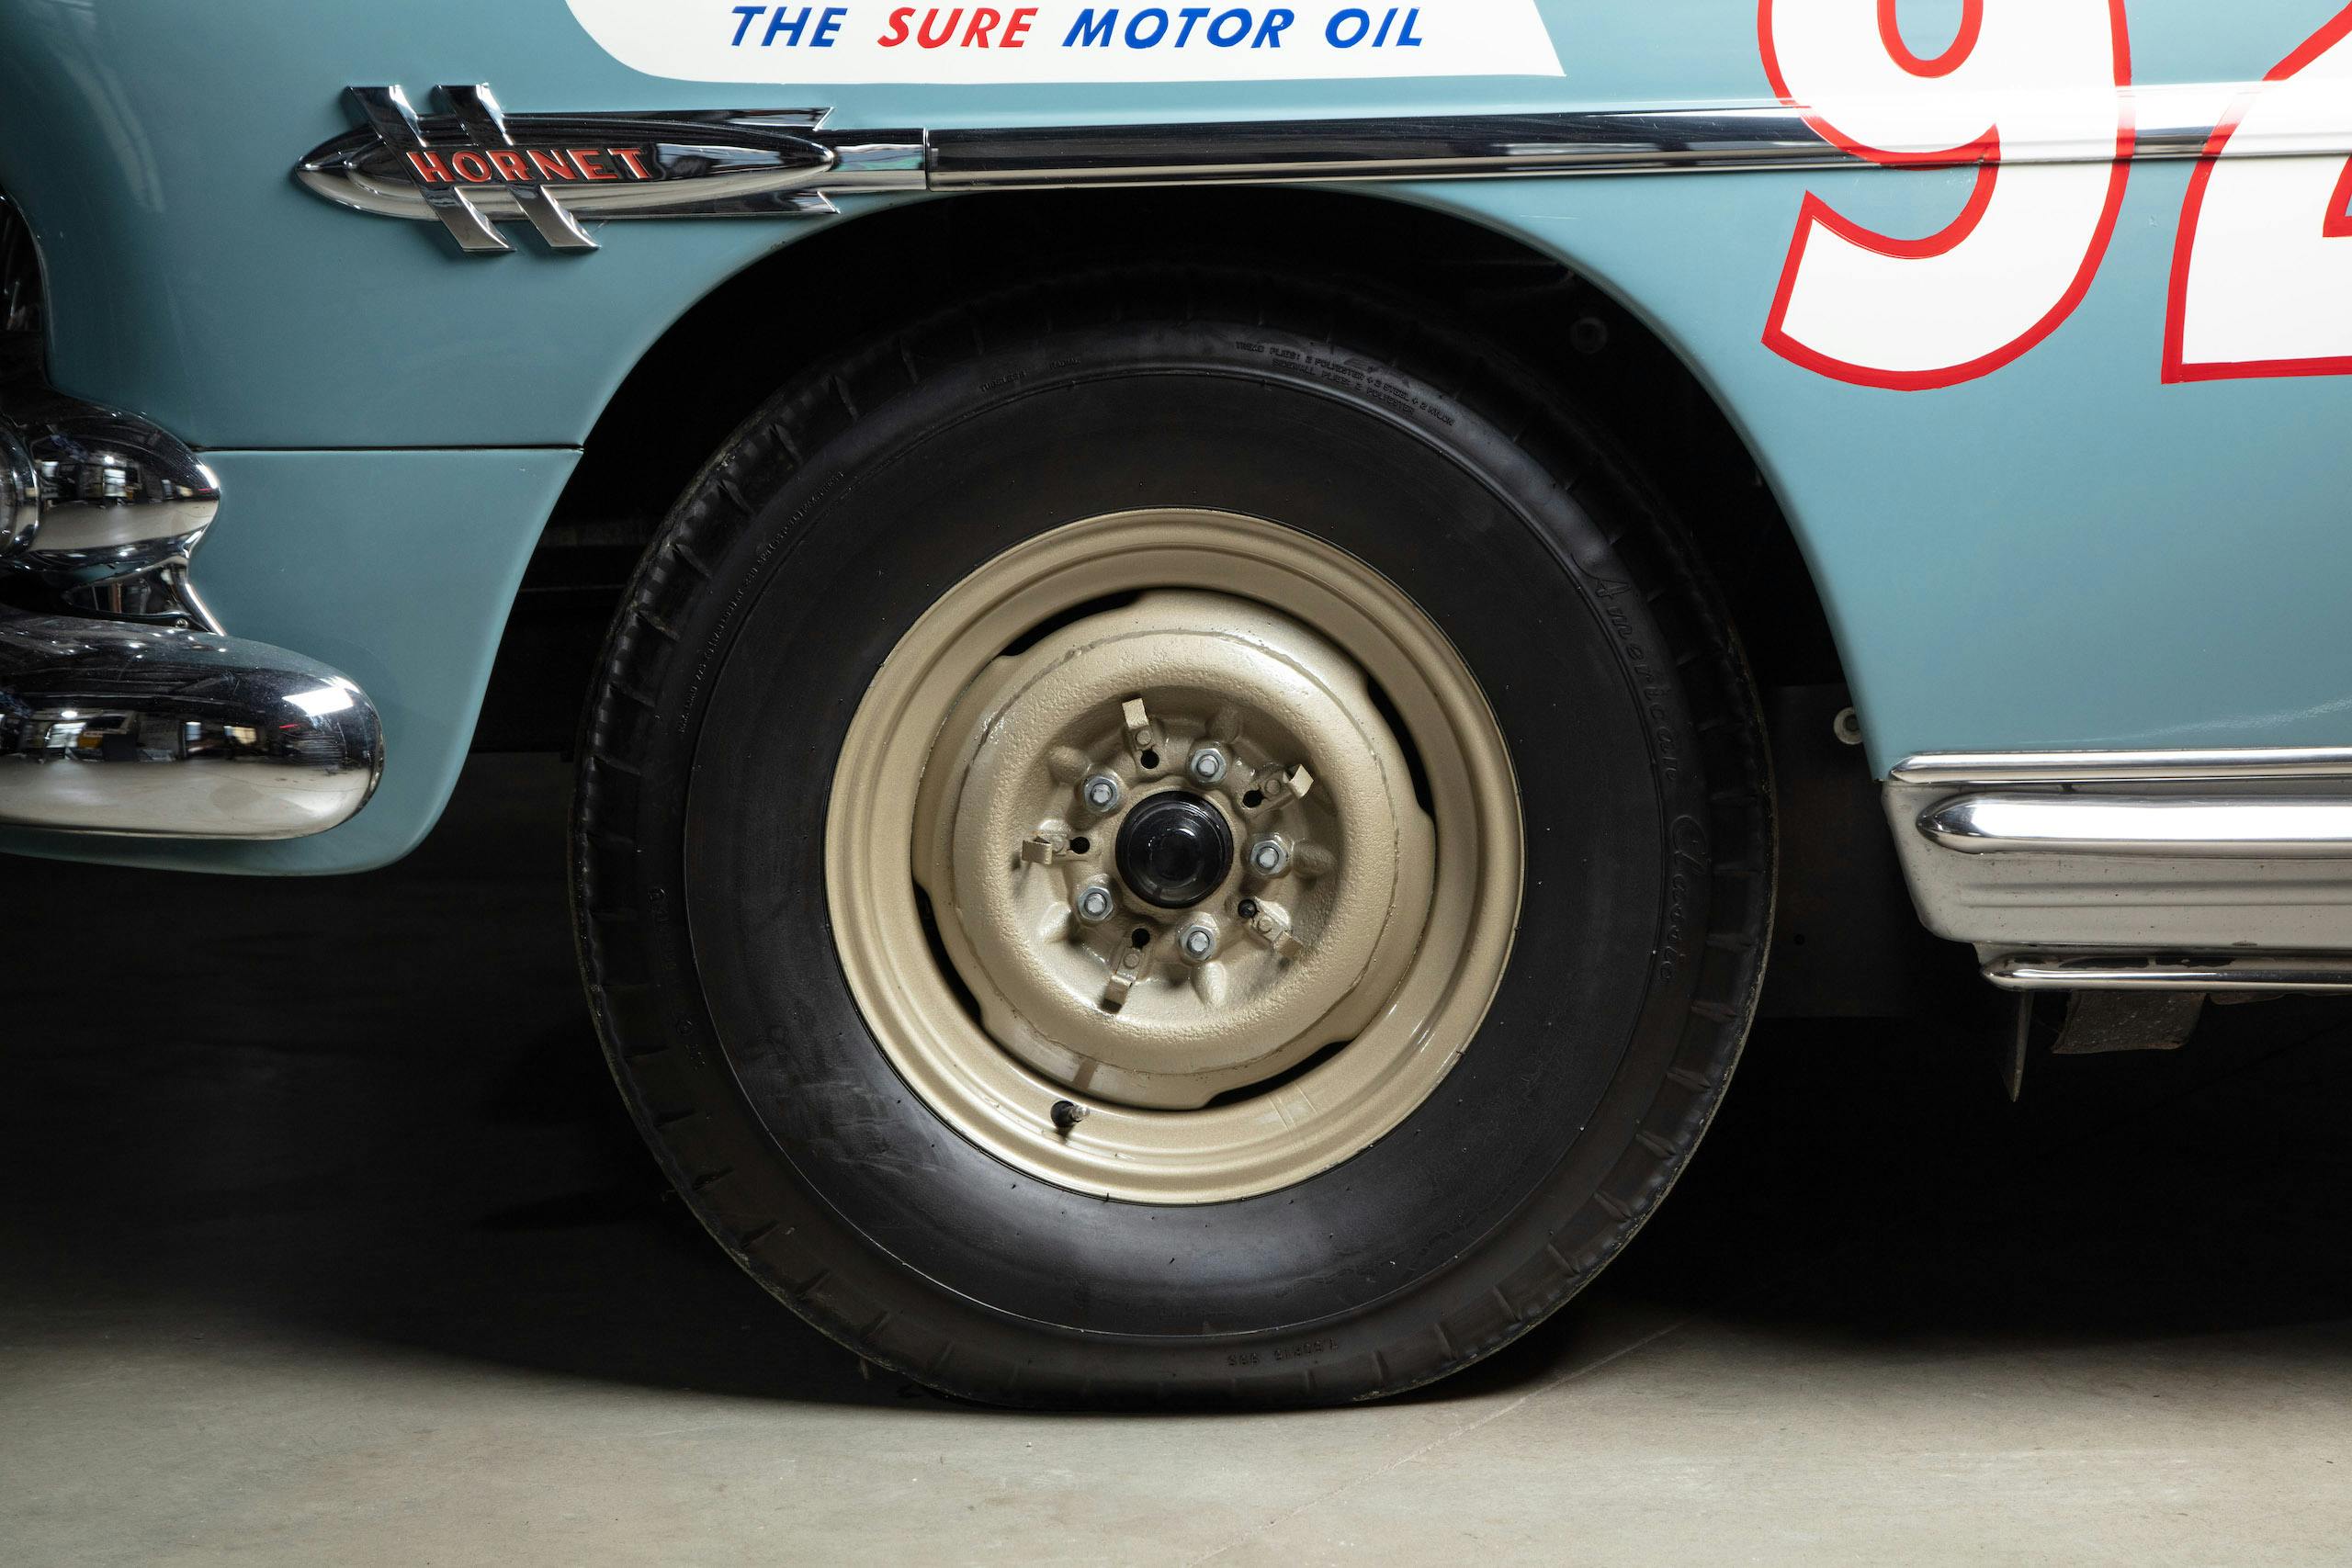 Hudson Hornet front wheel tire